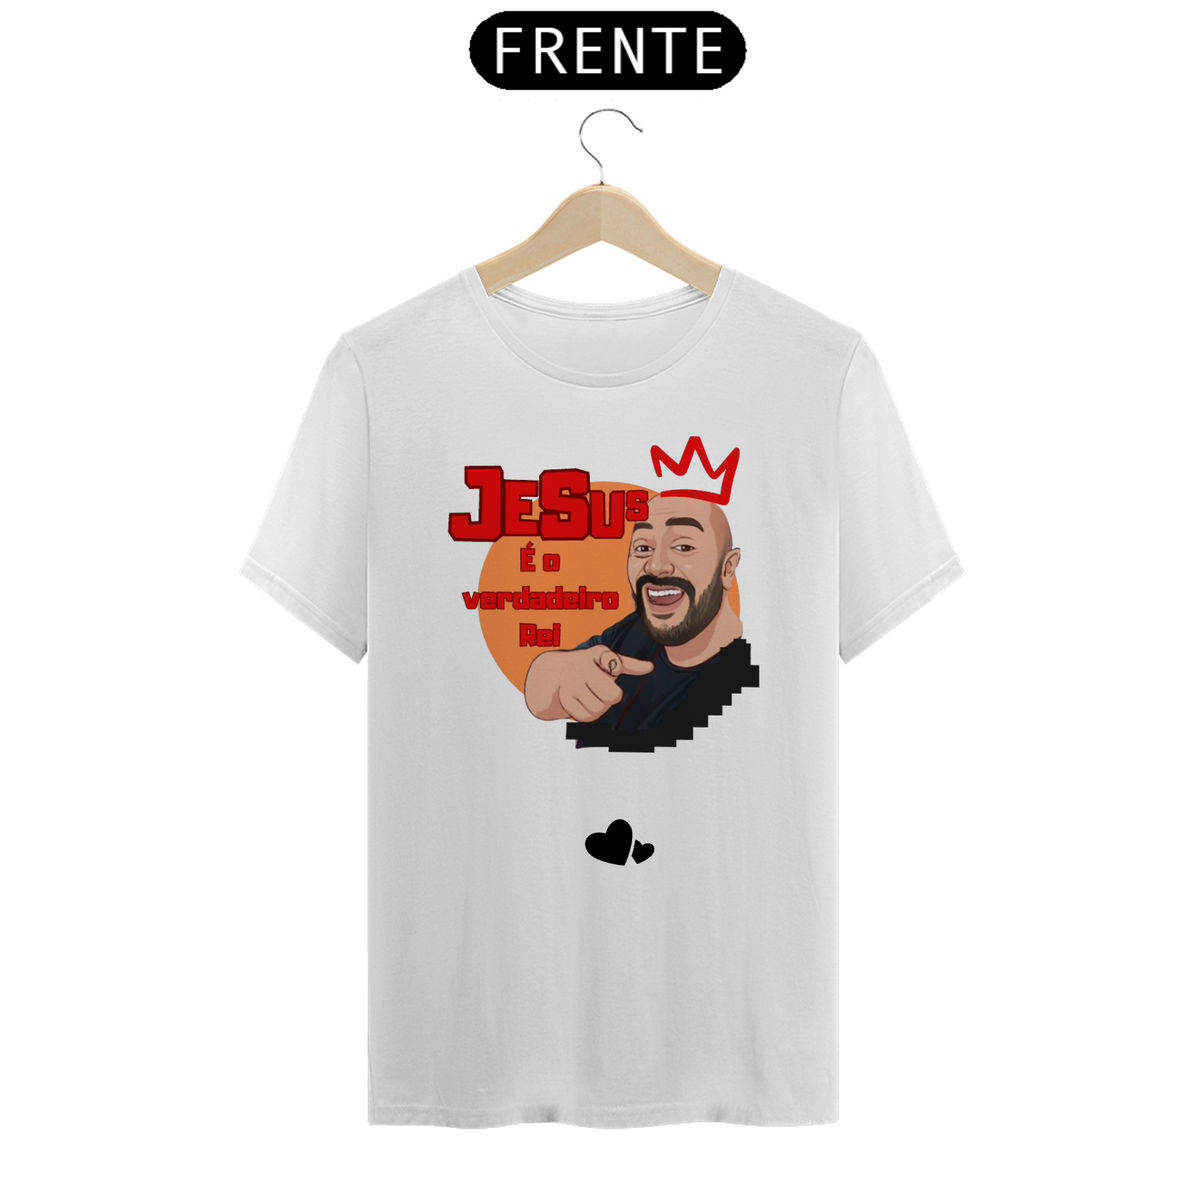 Nome do produto: Camisa Quality ( Jesus é o verdadeiro Rei )